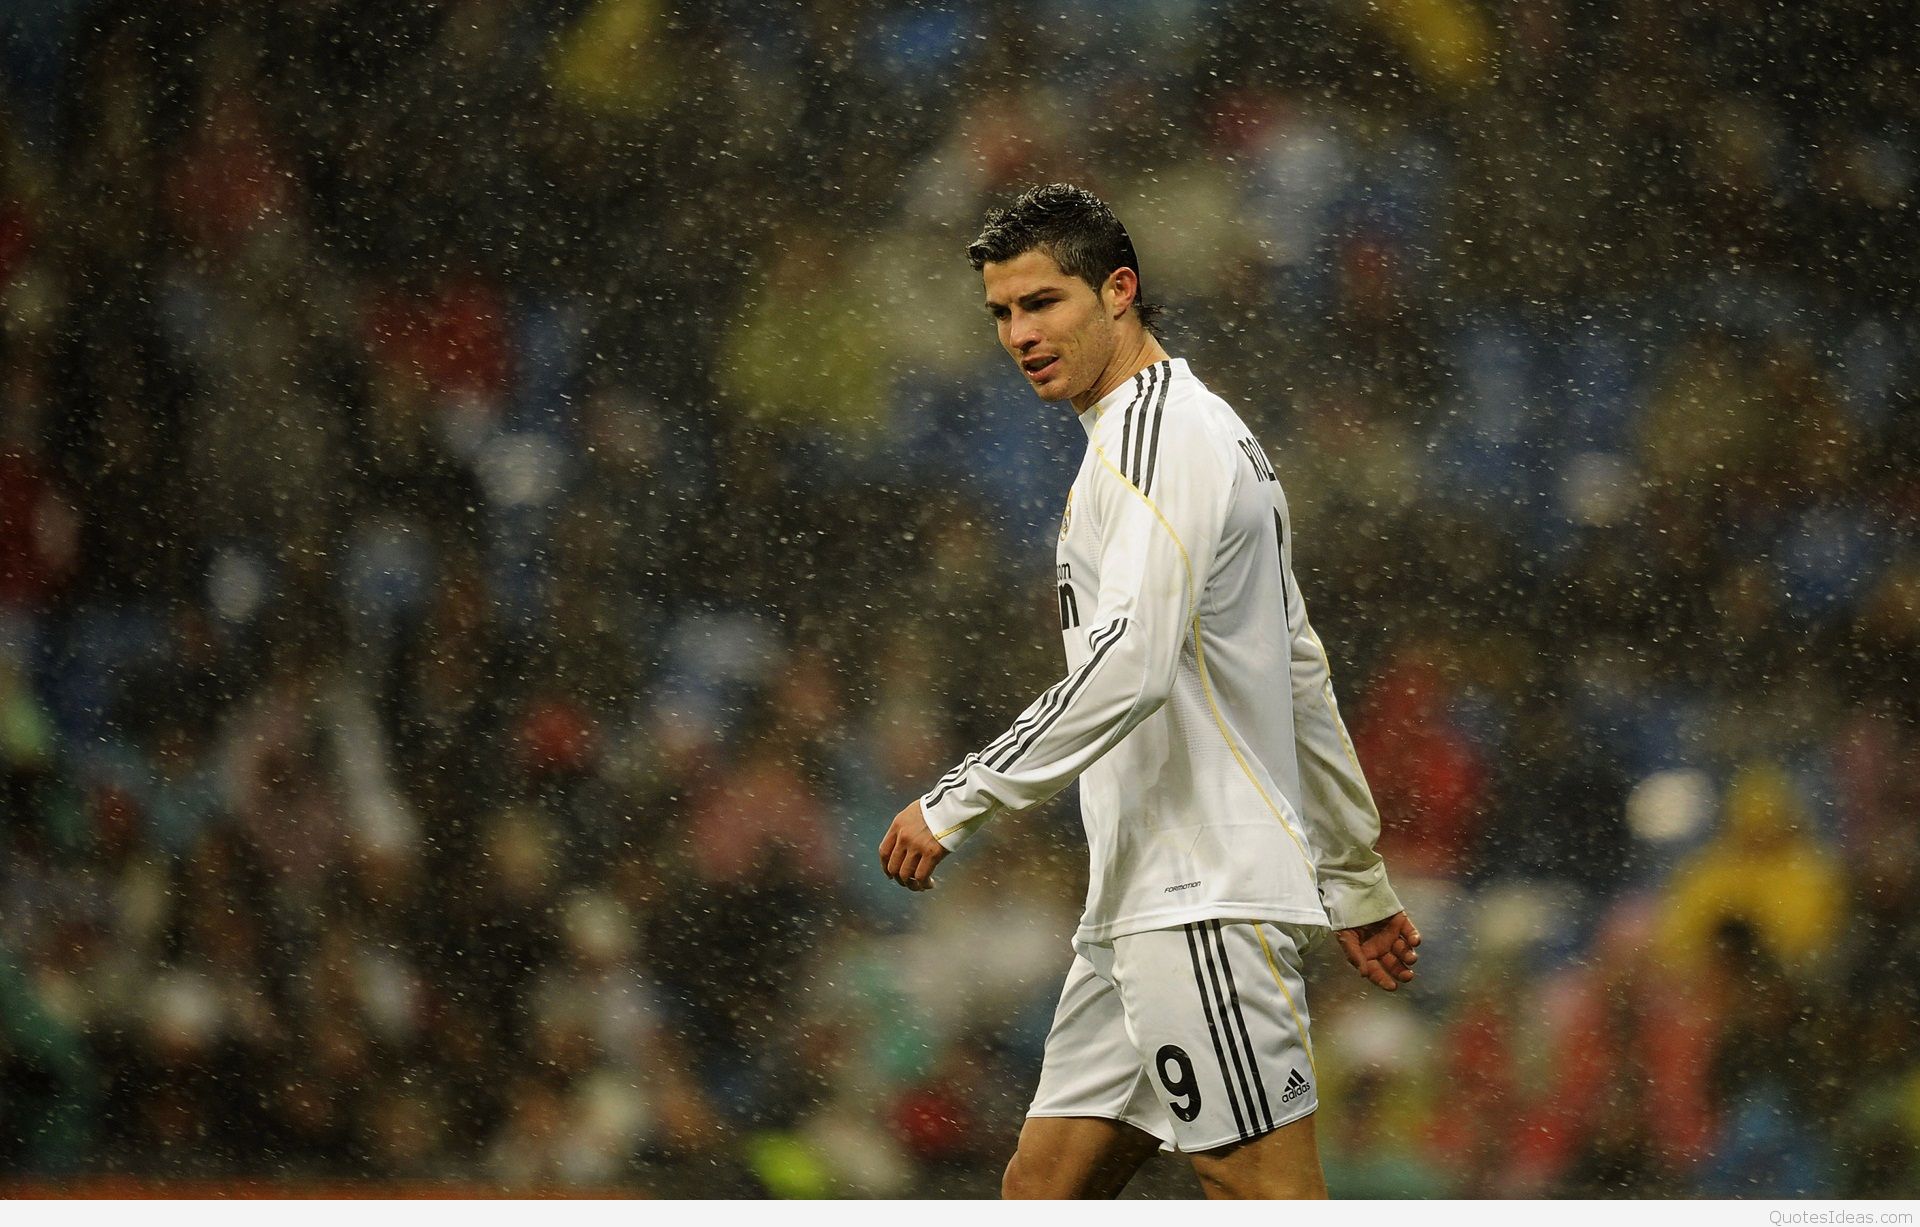 7010468 Cristiano Ronaldo Hd Wallpaper - Cristiano Ronaldo Hd Wallpaper For Desktop , HD Wallpaper & Backgrounds